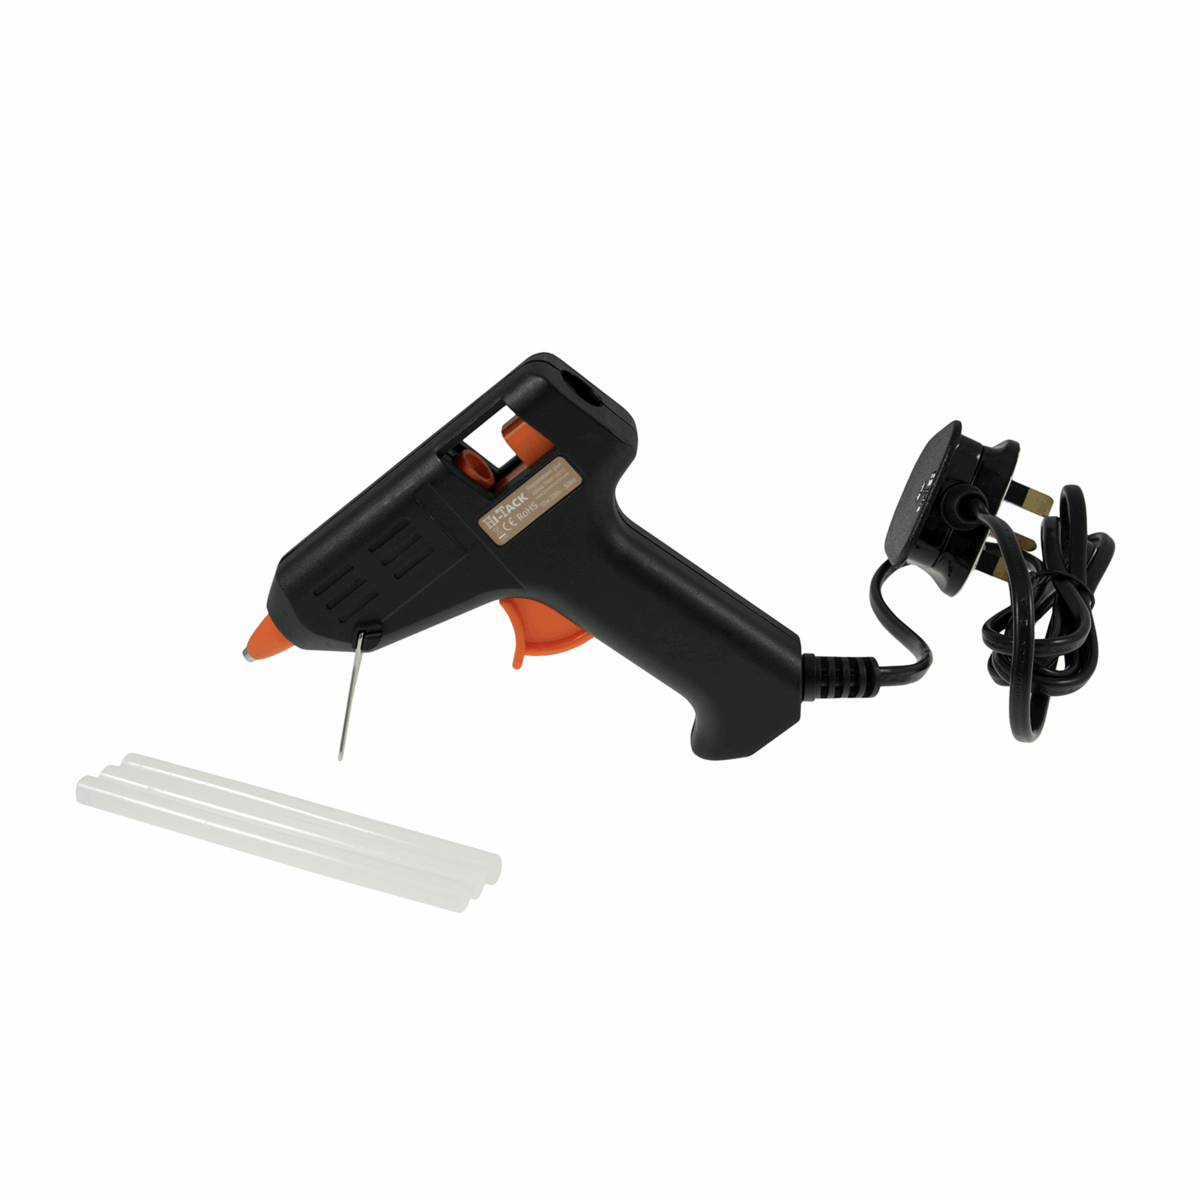 Trimits Hi-Tack Glue Gun (MG100) Mini 10w / Includes stand and 3 x glue sticks